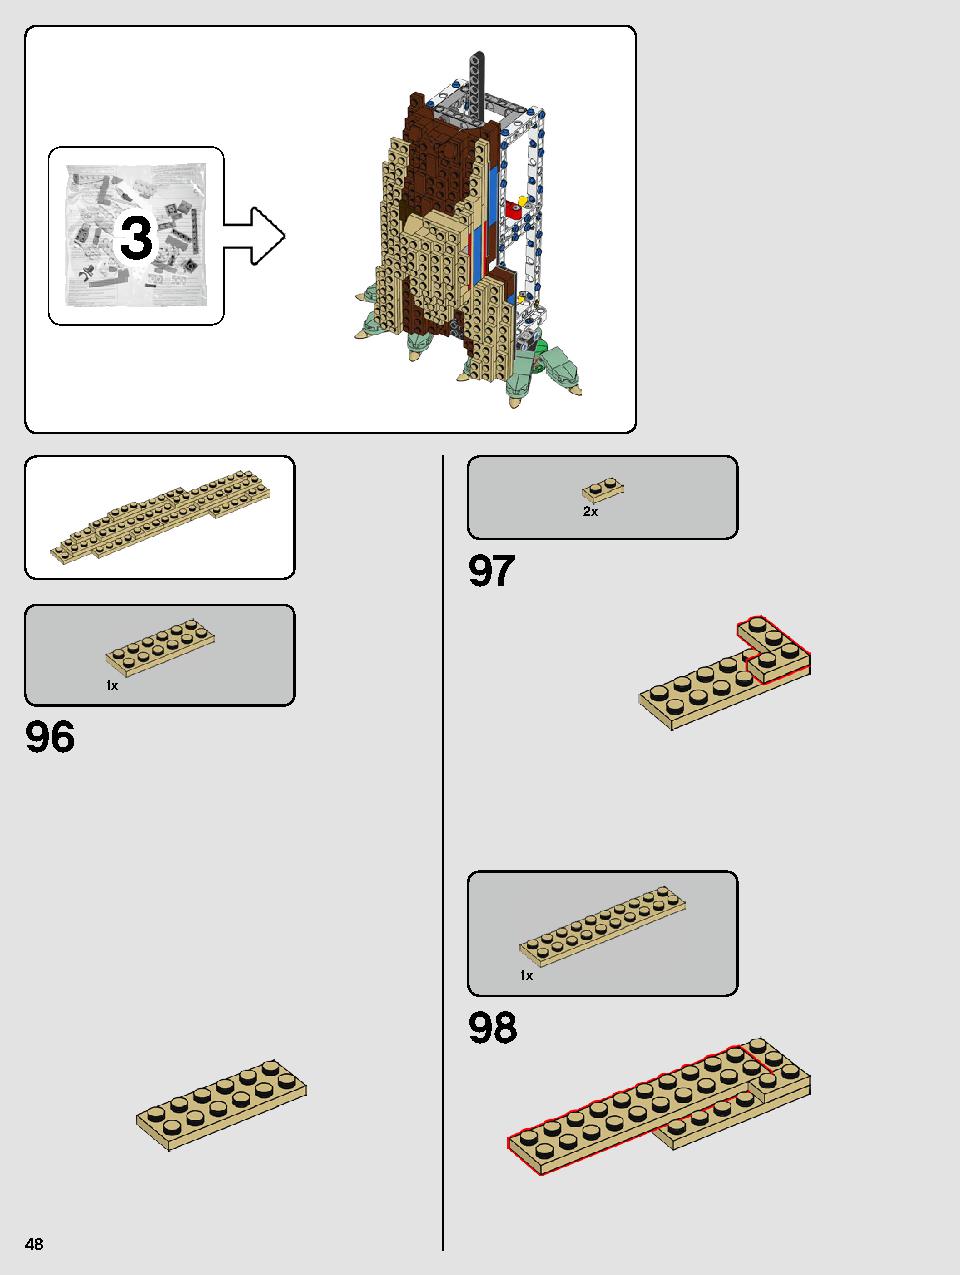 ヨーダ™ 75255 レゴの商品情報 レゴの説明書・組立方法 48 page